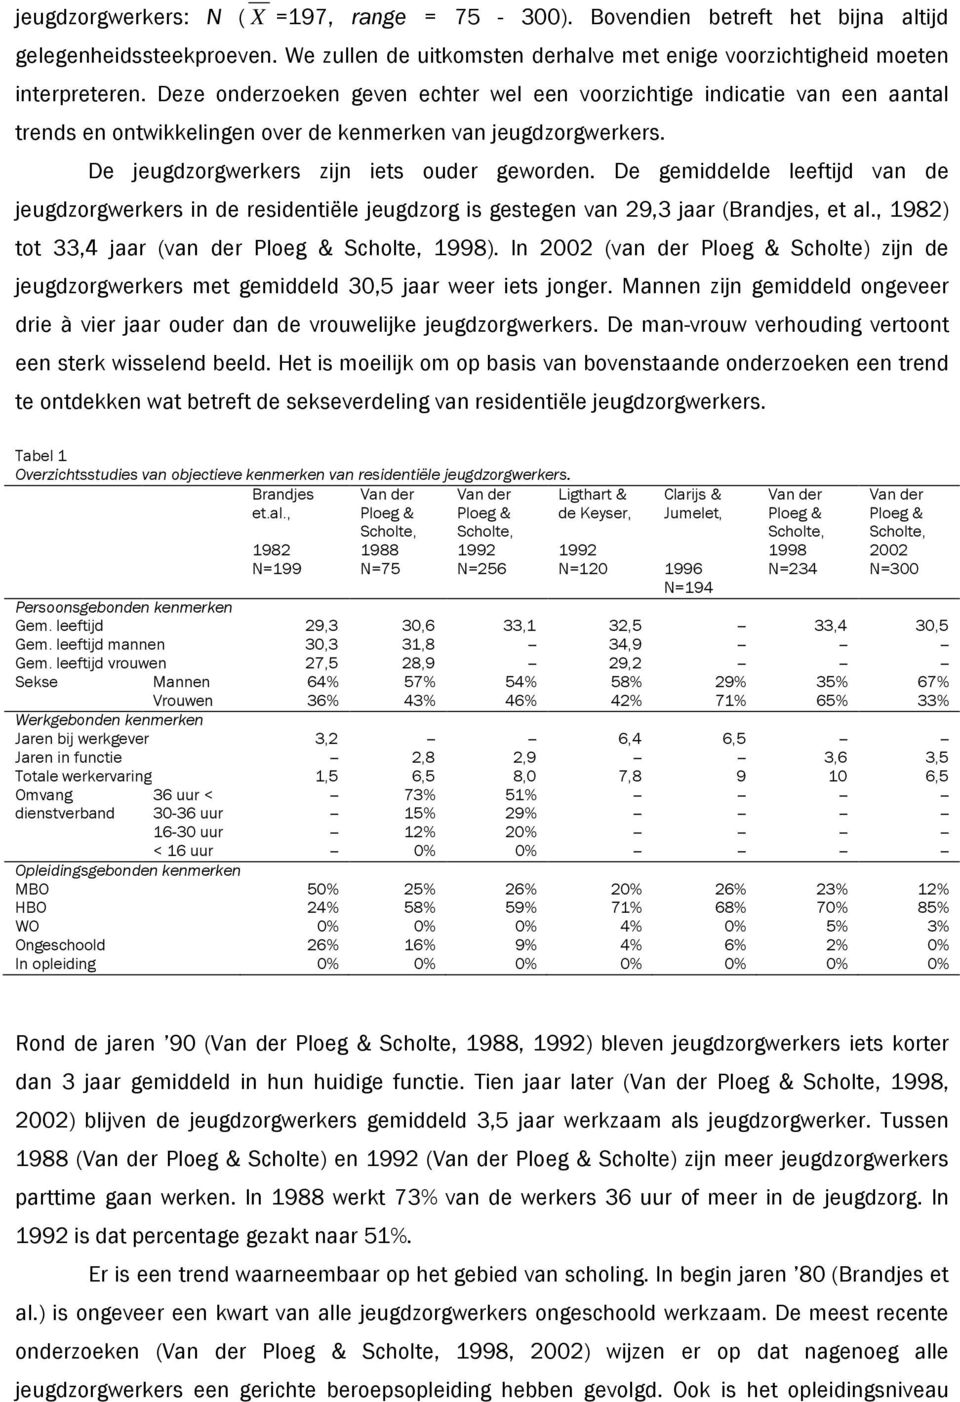 De gemiddelde leeftijd van de jeugdzorgwerkers in de residentiële jeugdzorg is gestegen van 29,3 jaar (Brandjes, et al., 1982) tot 33,4 jaar (van der Ploeg & Scholte, 1998).